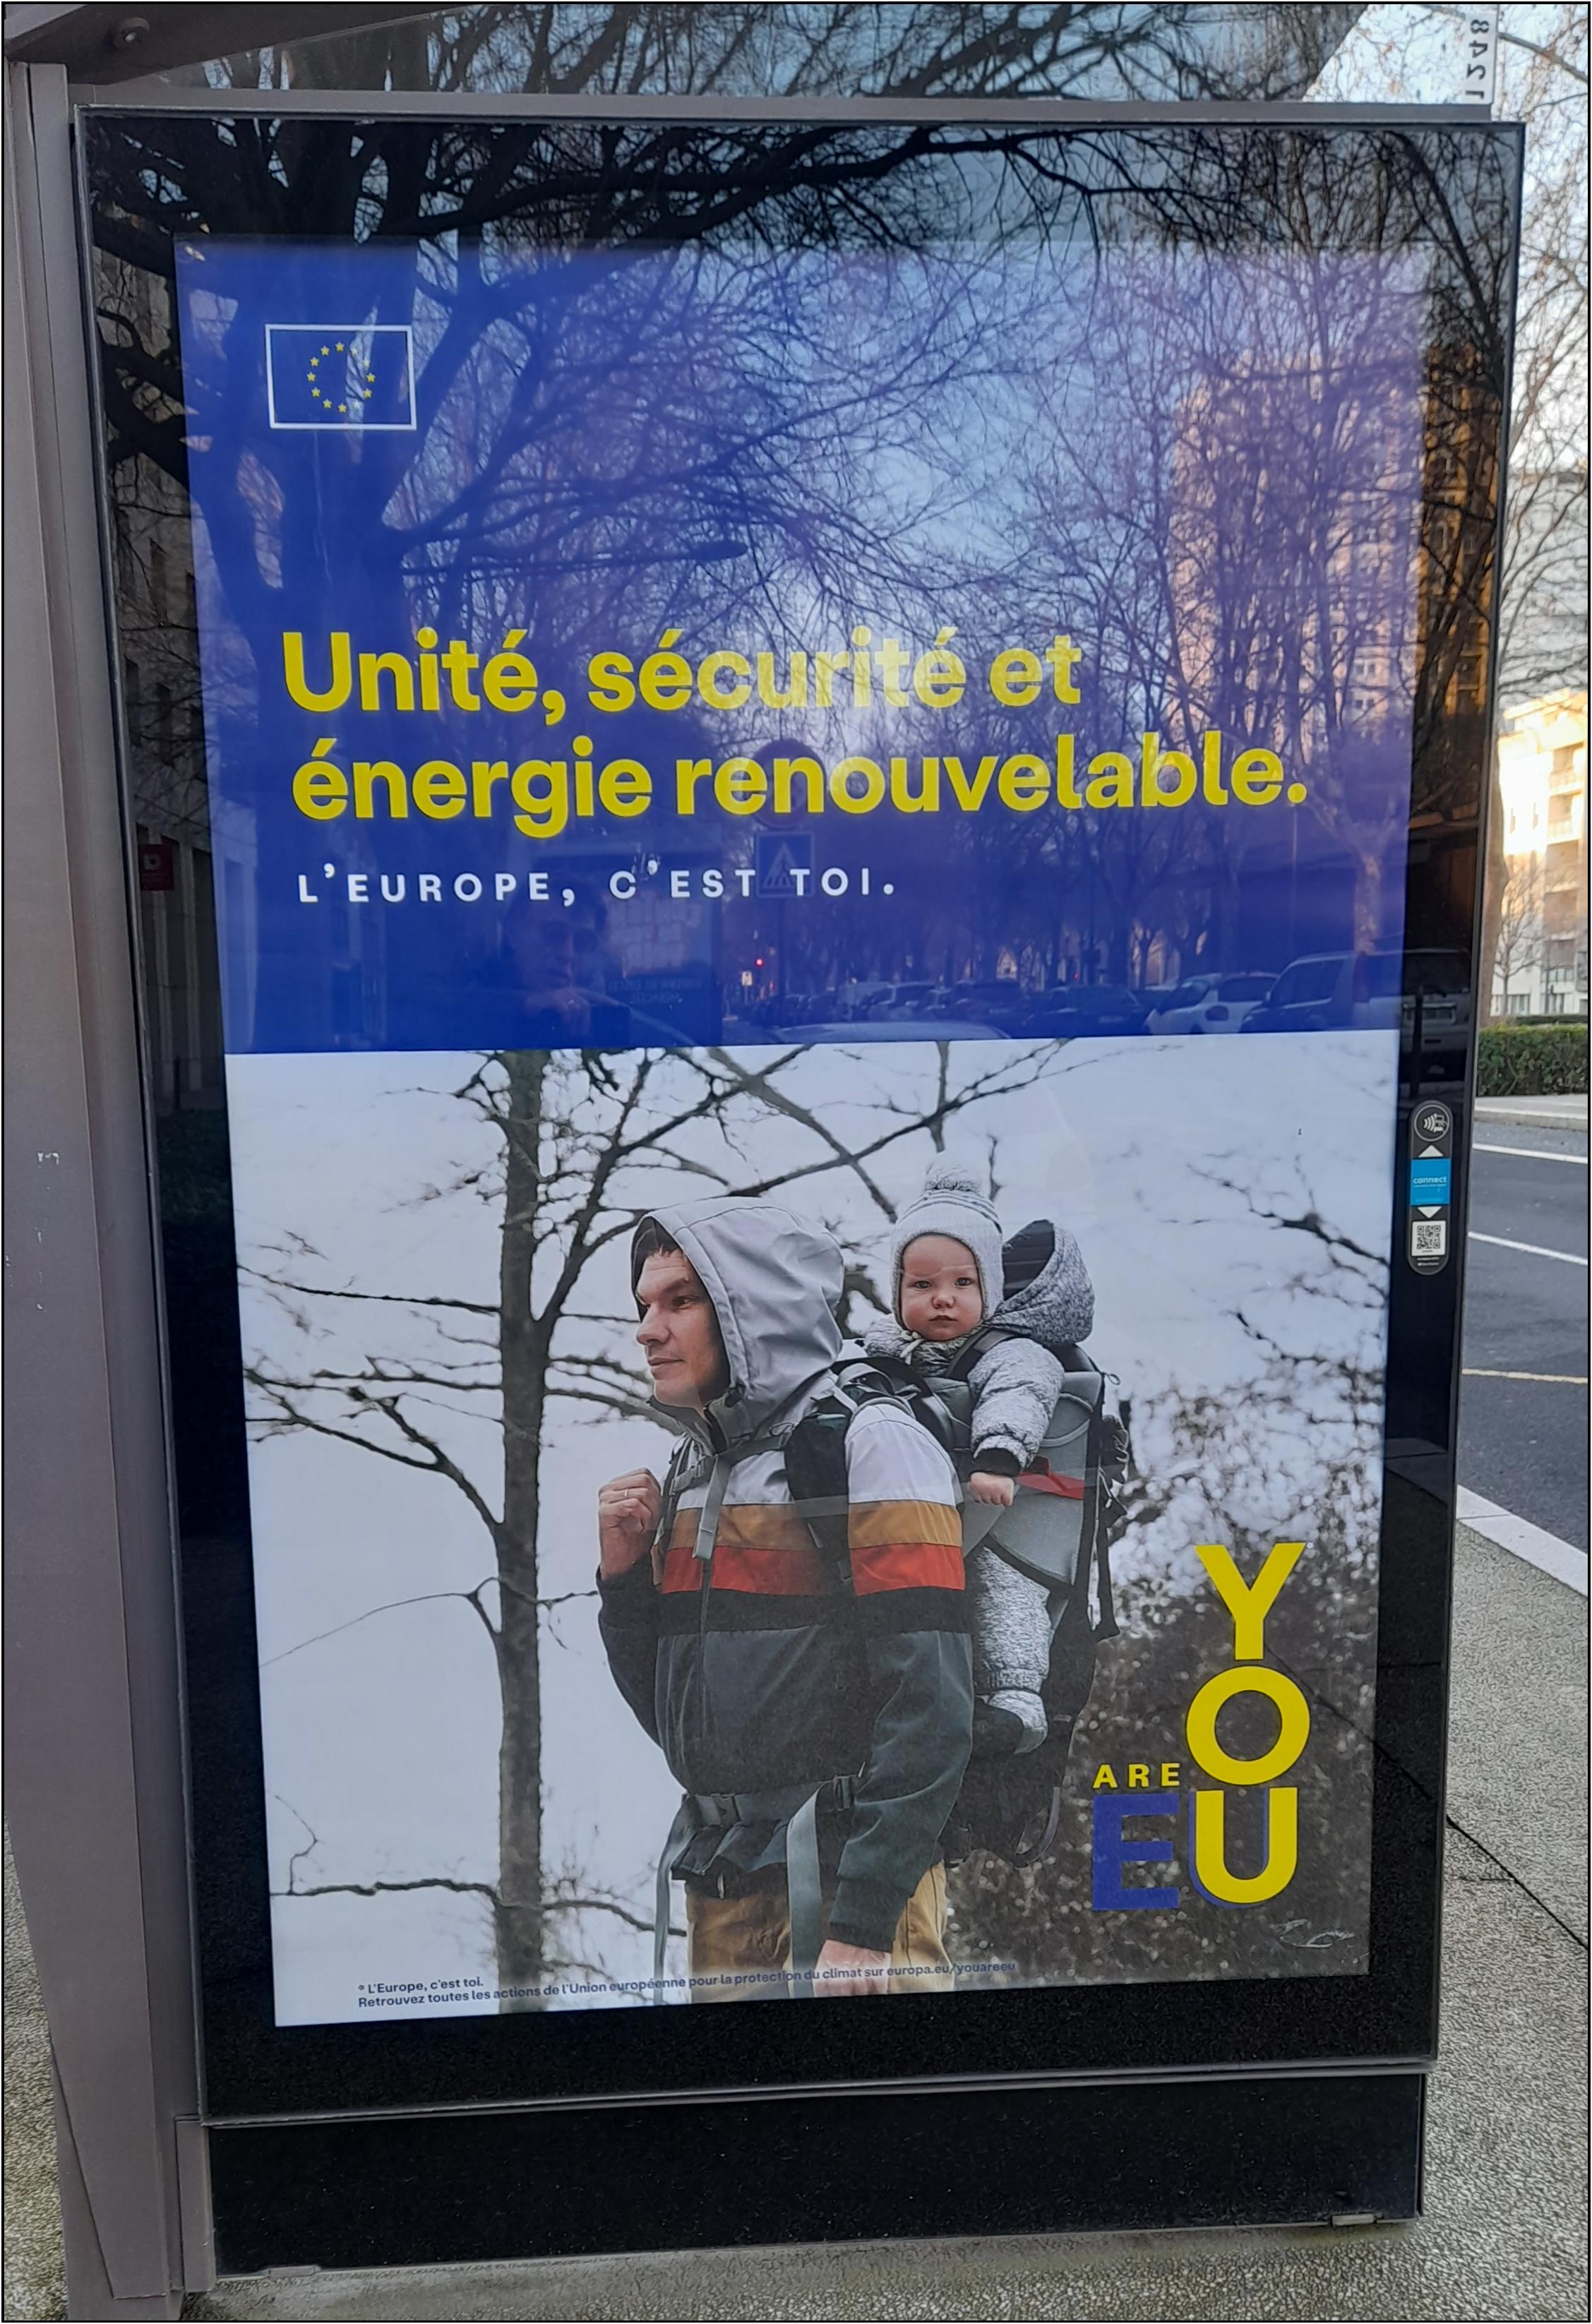 You are EU, publicité au slogan en anglais de la Commission européenne qui bafoue la langue française